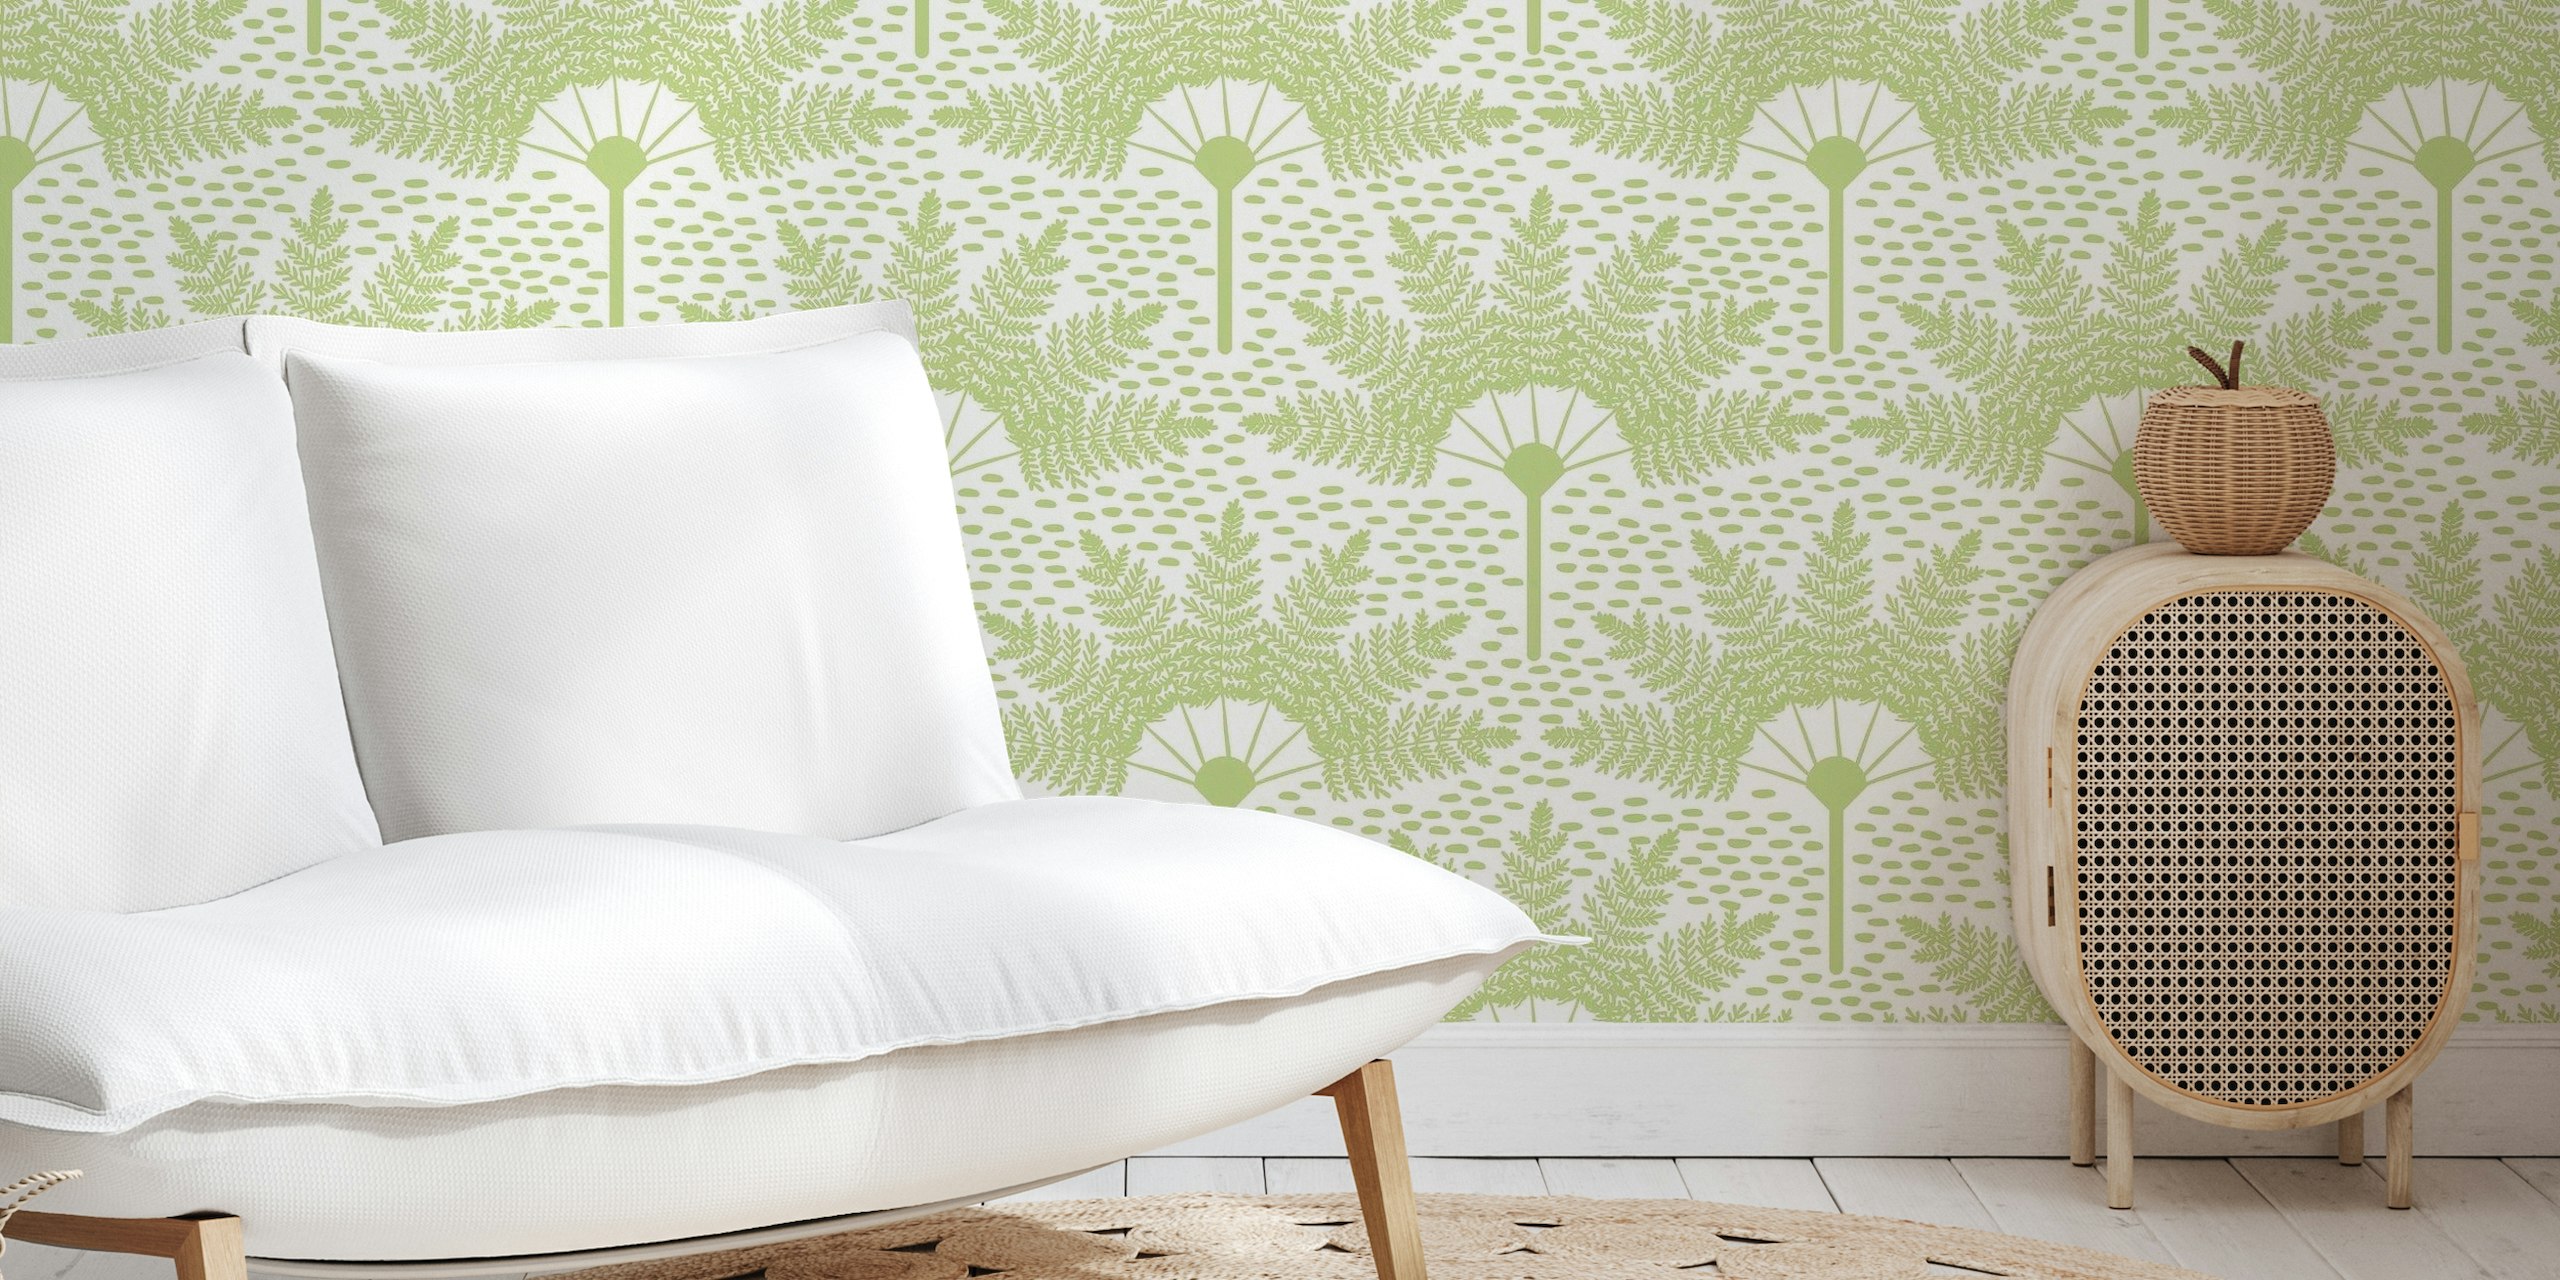 Fotomural vinílico de parede elegante com padrão de palma verde pastel para decoração de casa moderna